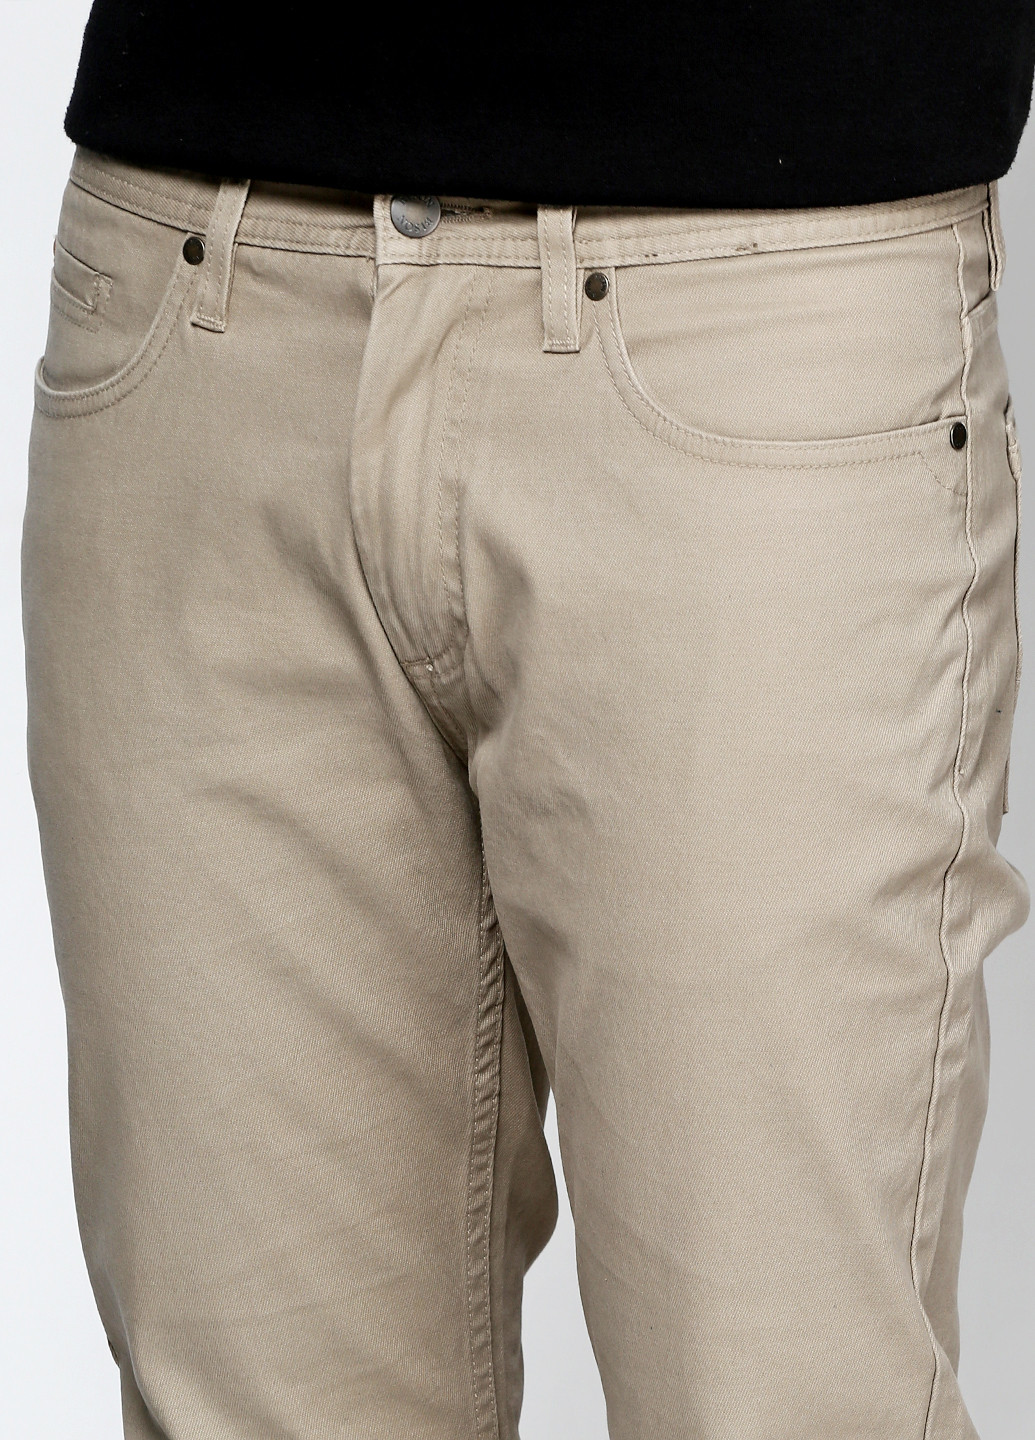 Бежевые кэжуал демисезонные со средней талией брюки Bison